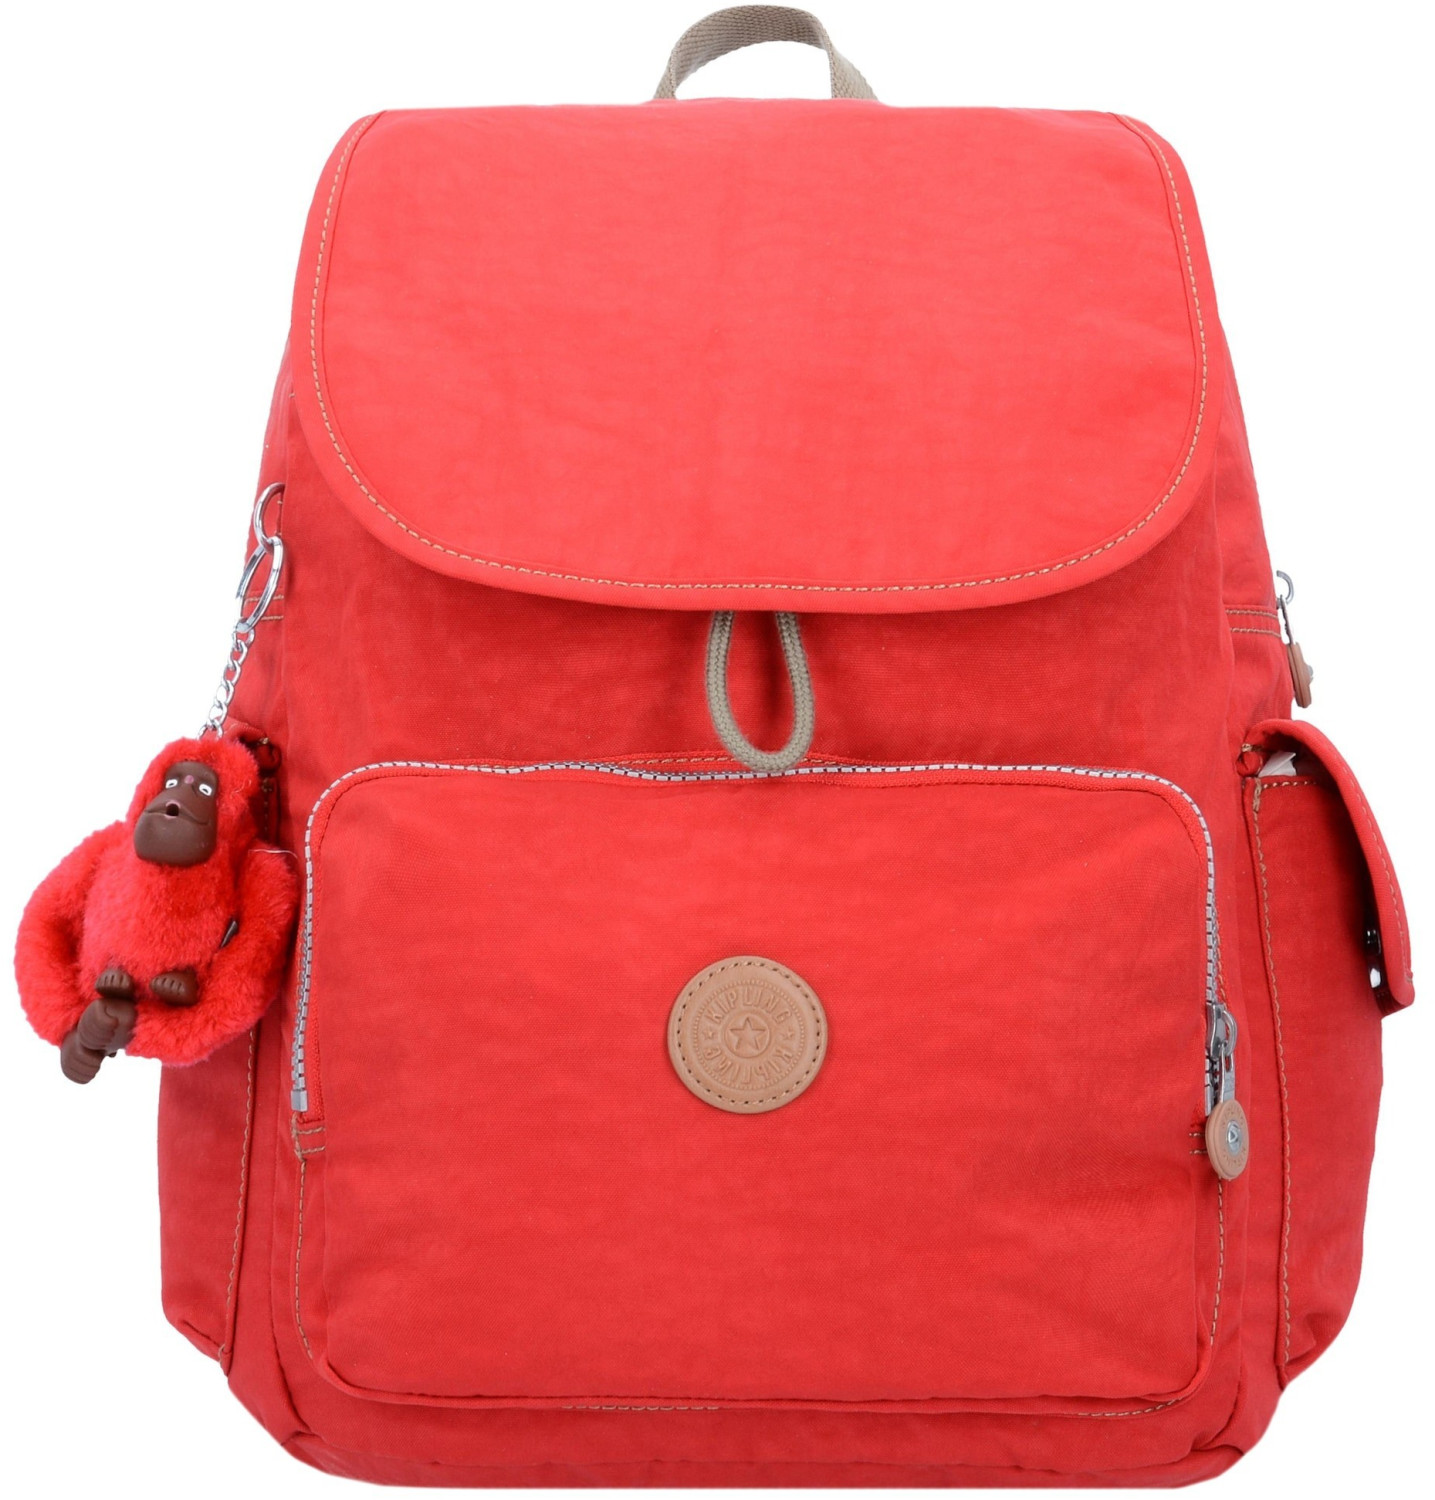 Photos - Backpack Kipling City Pack B true red C 